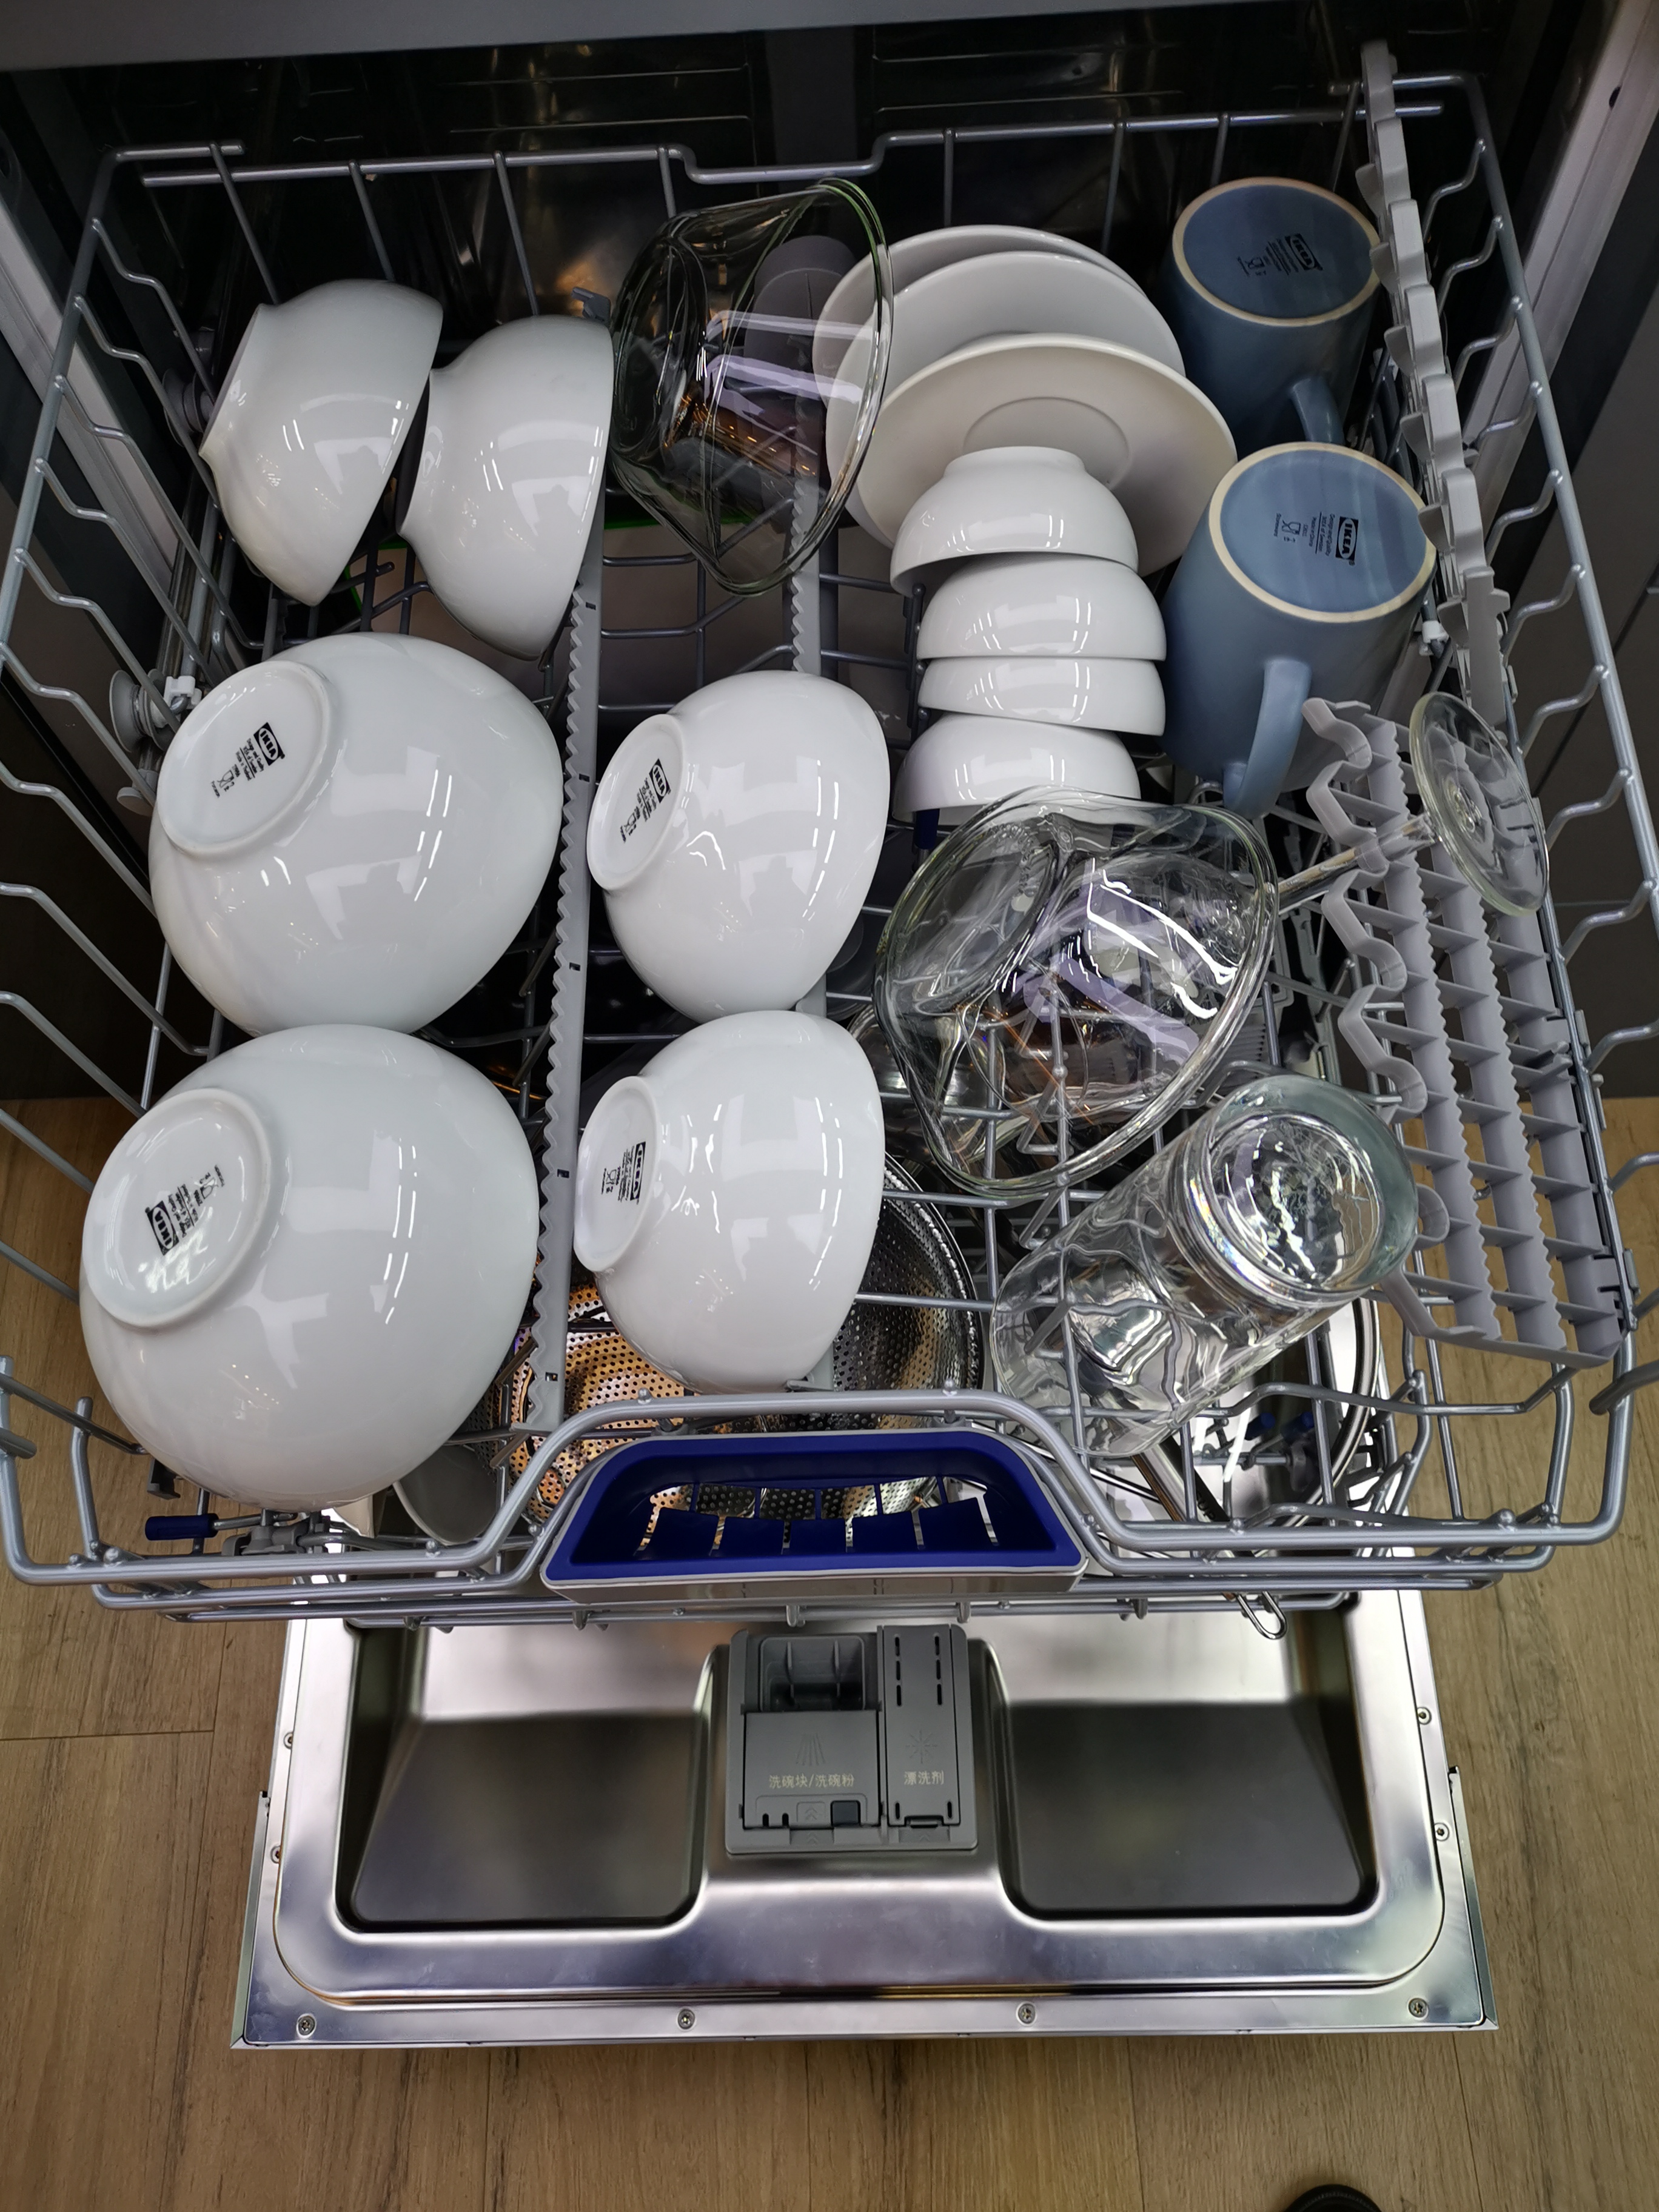 我们为您提供洗碗机洗碗机的优质评价,包括洗碗机洗碗机商品评价,晒单